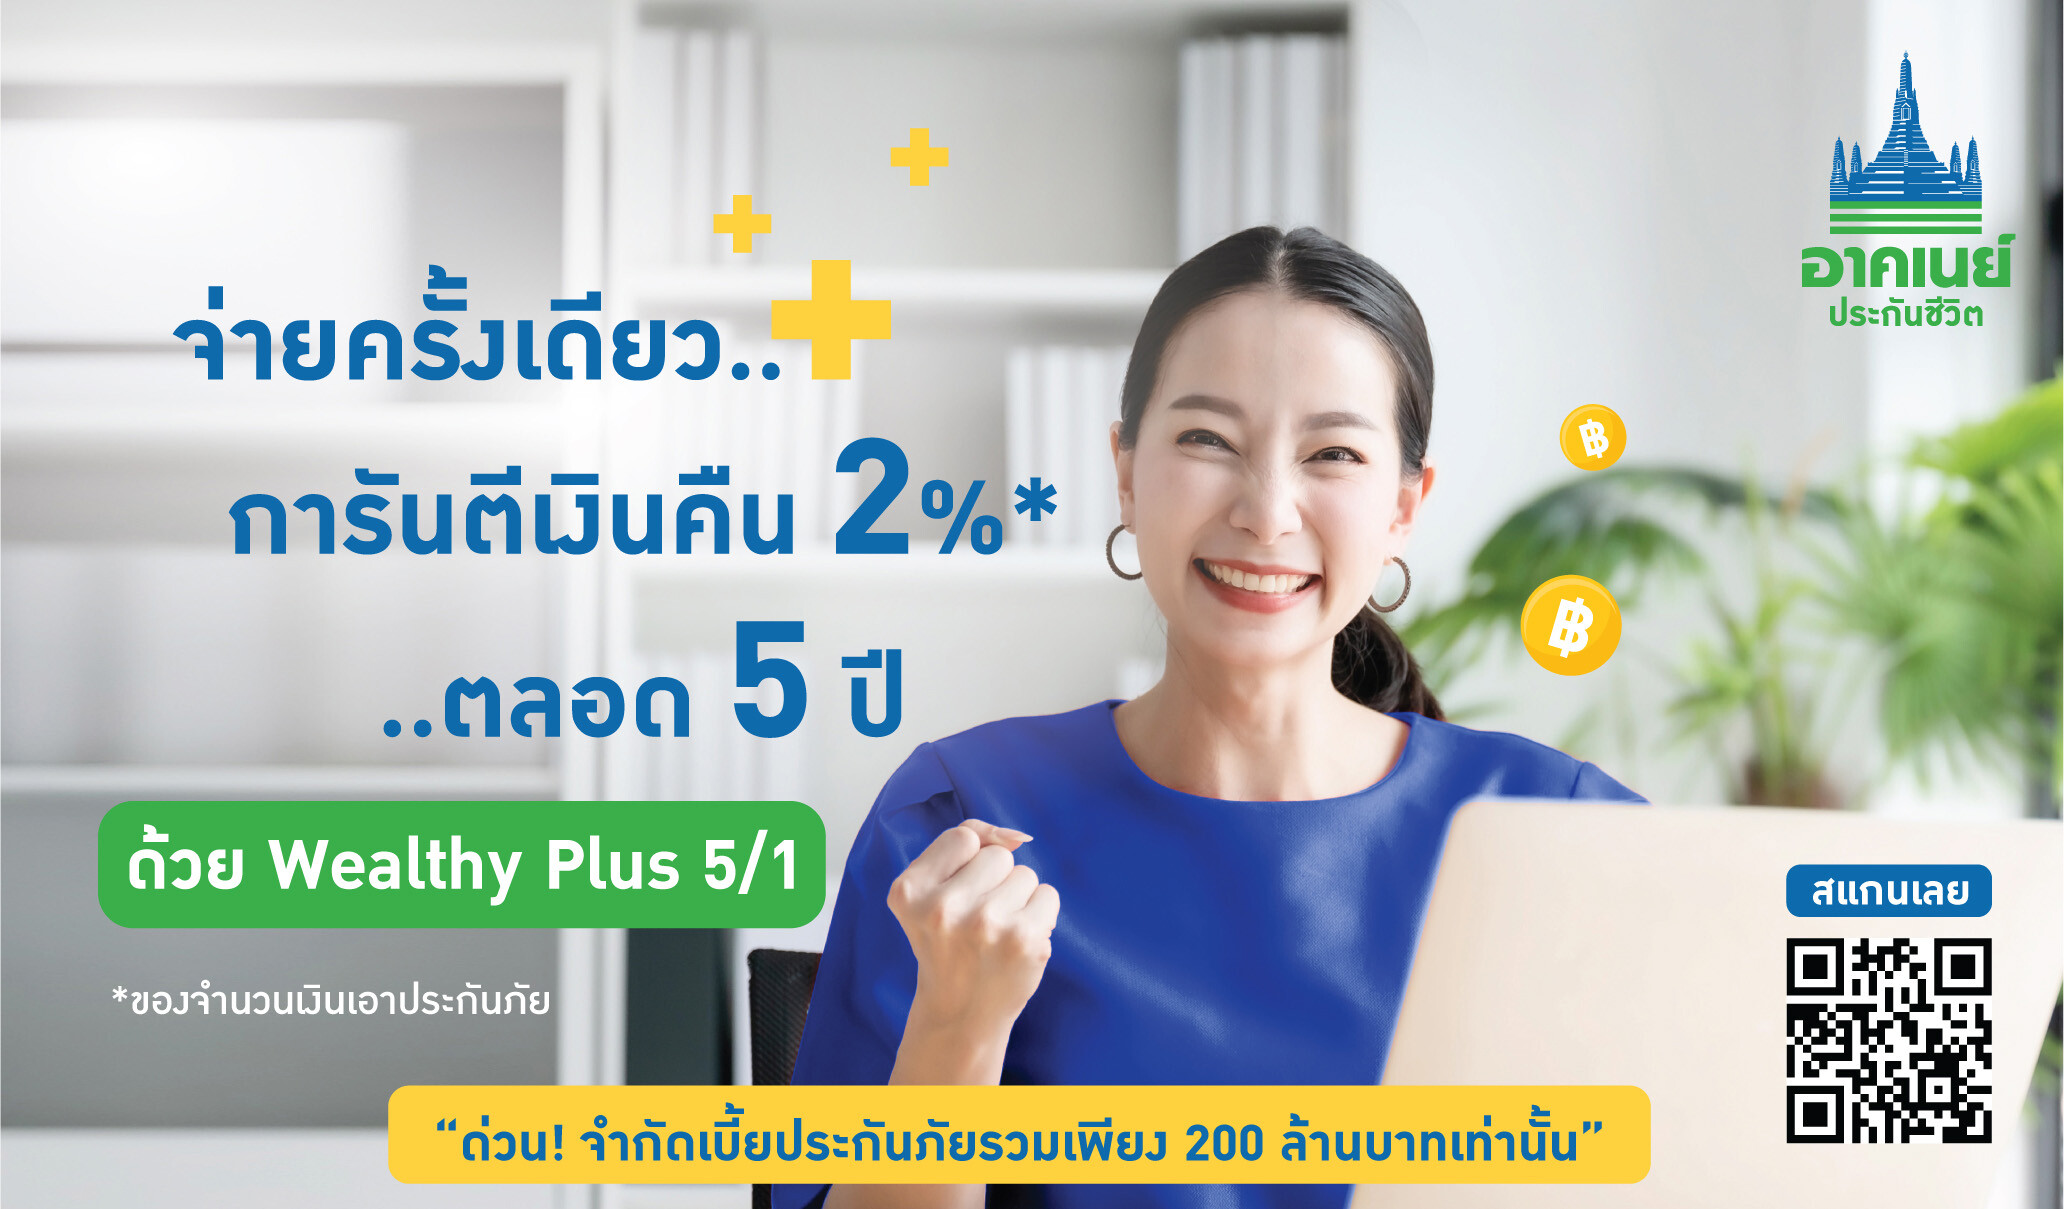 อาคเนย์ประกันชีวิต ชวนคนไทยวางแผนสุขภาพการเงิน  ด้วย "Wealthy Plus 5/1" จ่ายเบี้ยครั้งเดียว รับผลตอบแทนสูง